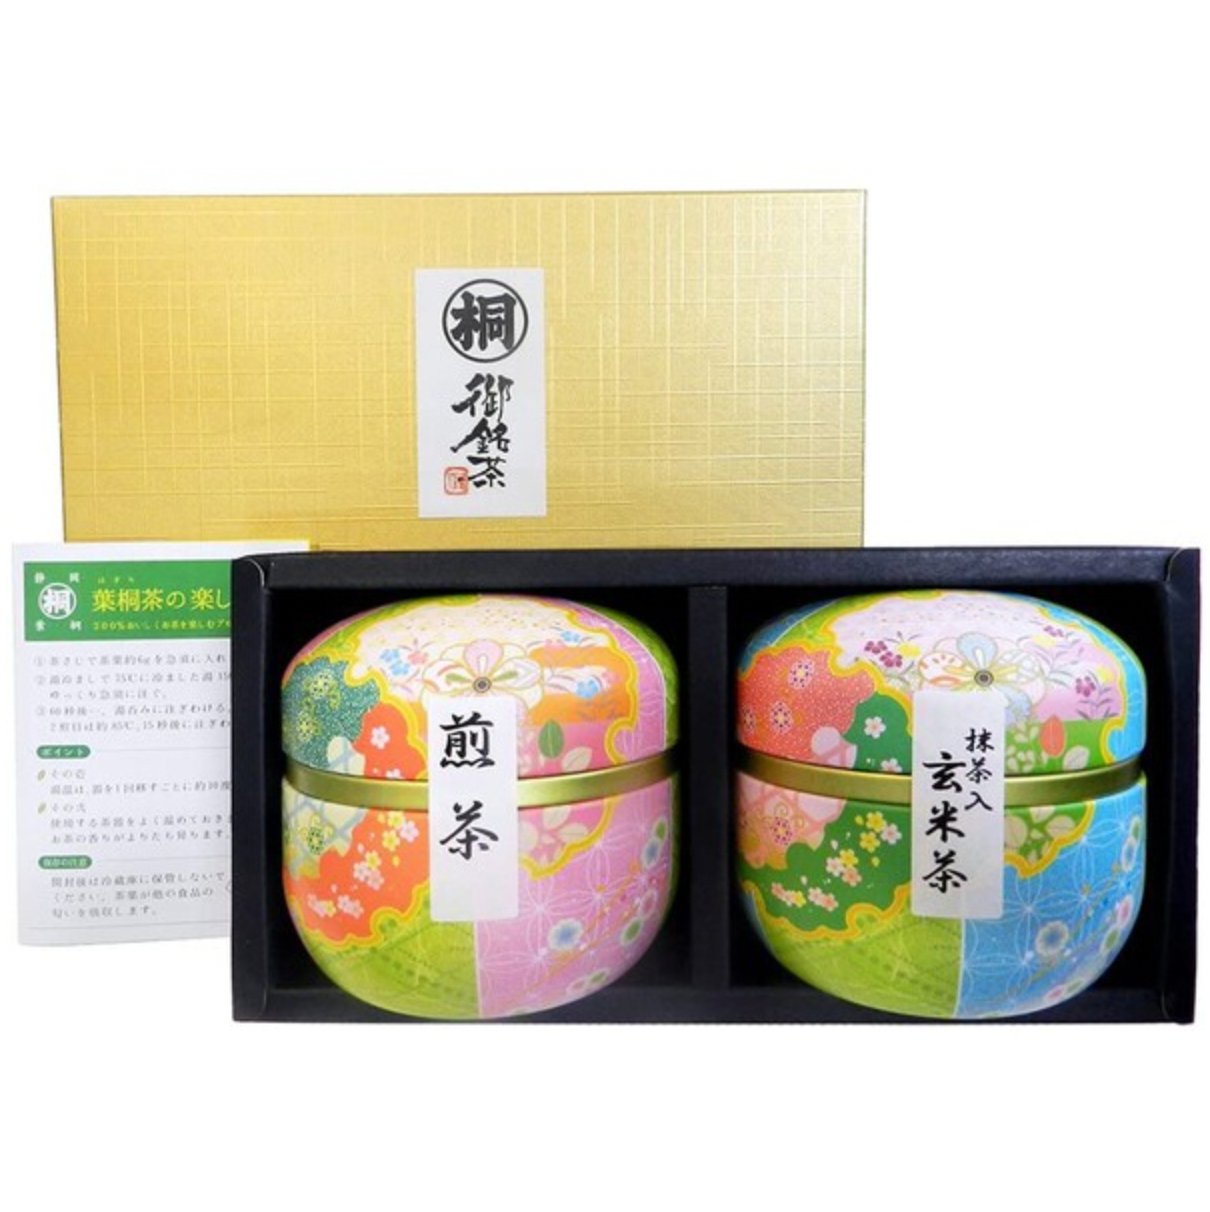 Hagiri Gift Suzuko Can Set of 2 50g x 2 - NihonMura